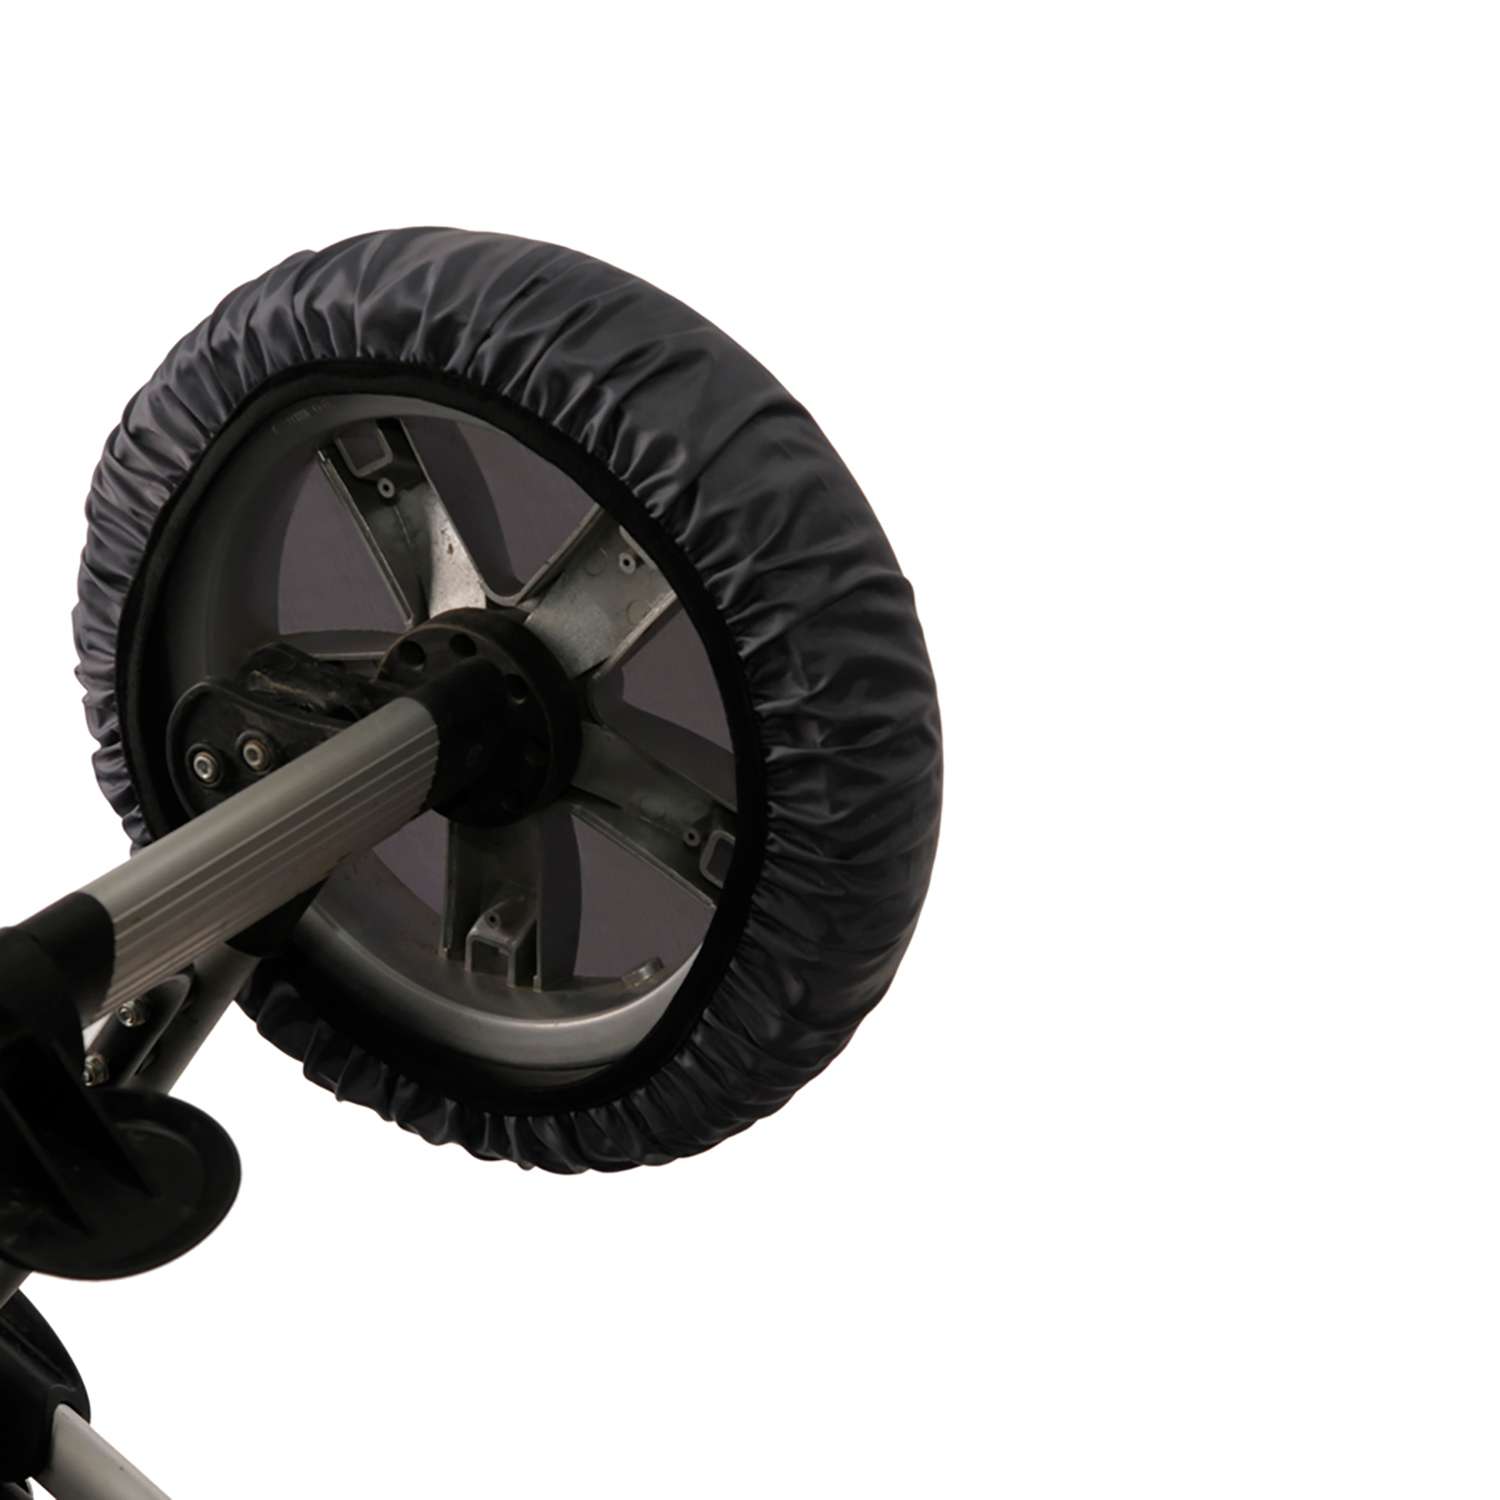 Чехлы на колеса Чудо-чадо для коляски 4 шт мокрый асфальт / d = 28-34 см CHK01-001 - фото 5